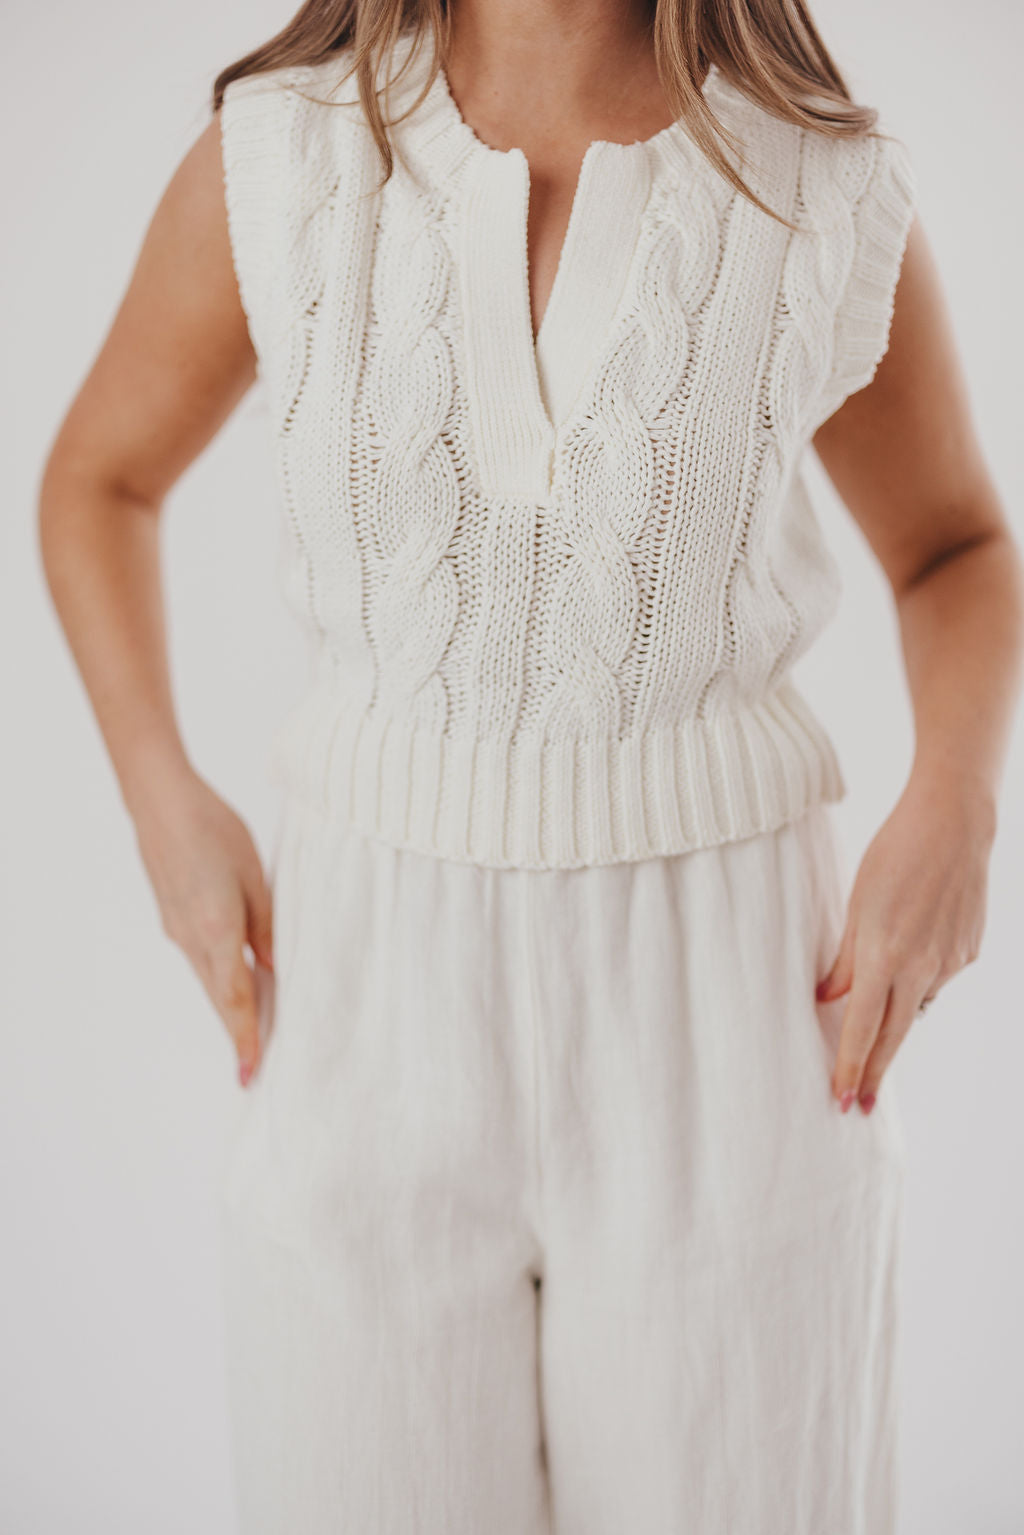 Monroe Sweater Knit Tank in White